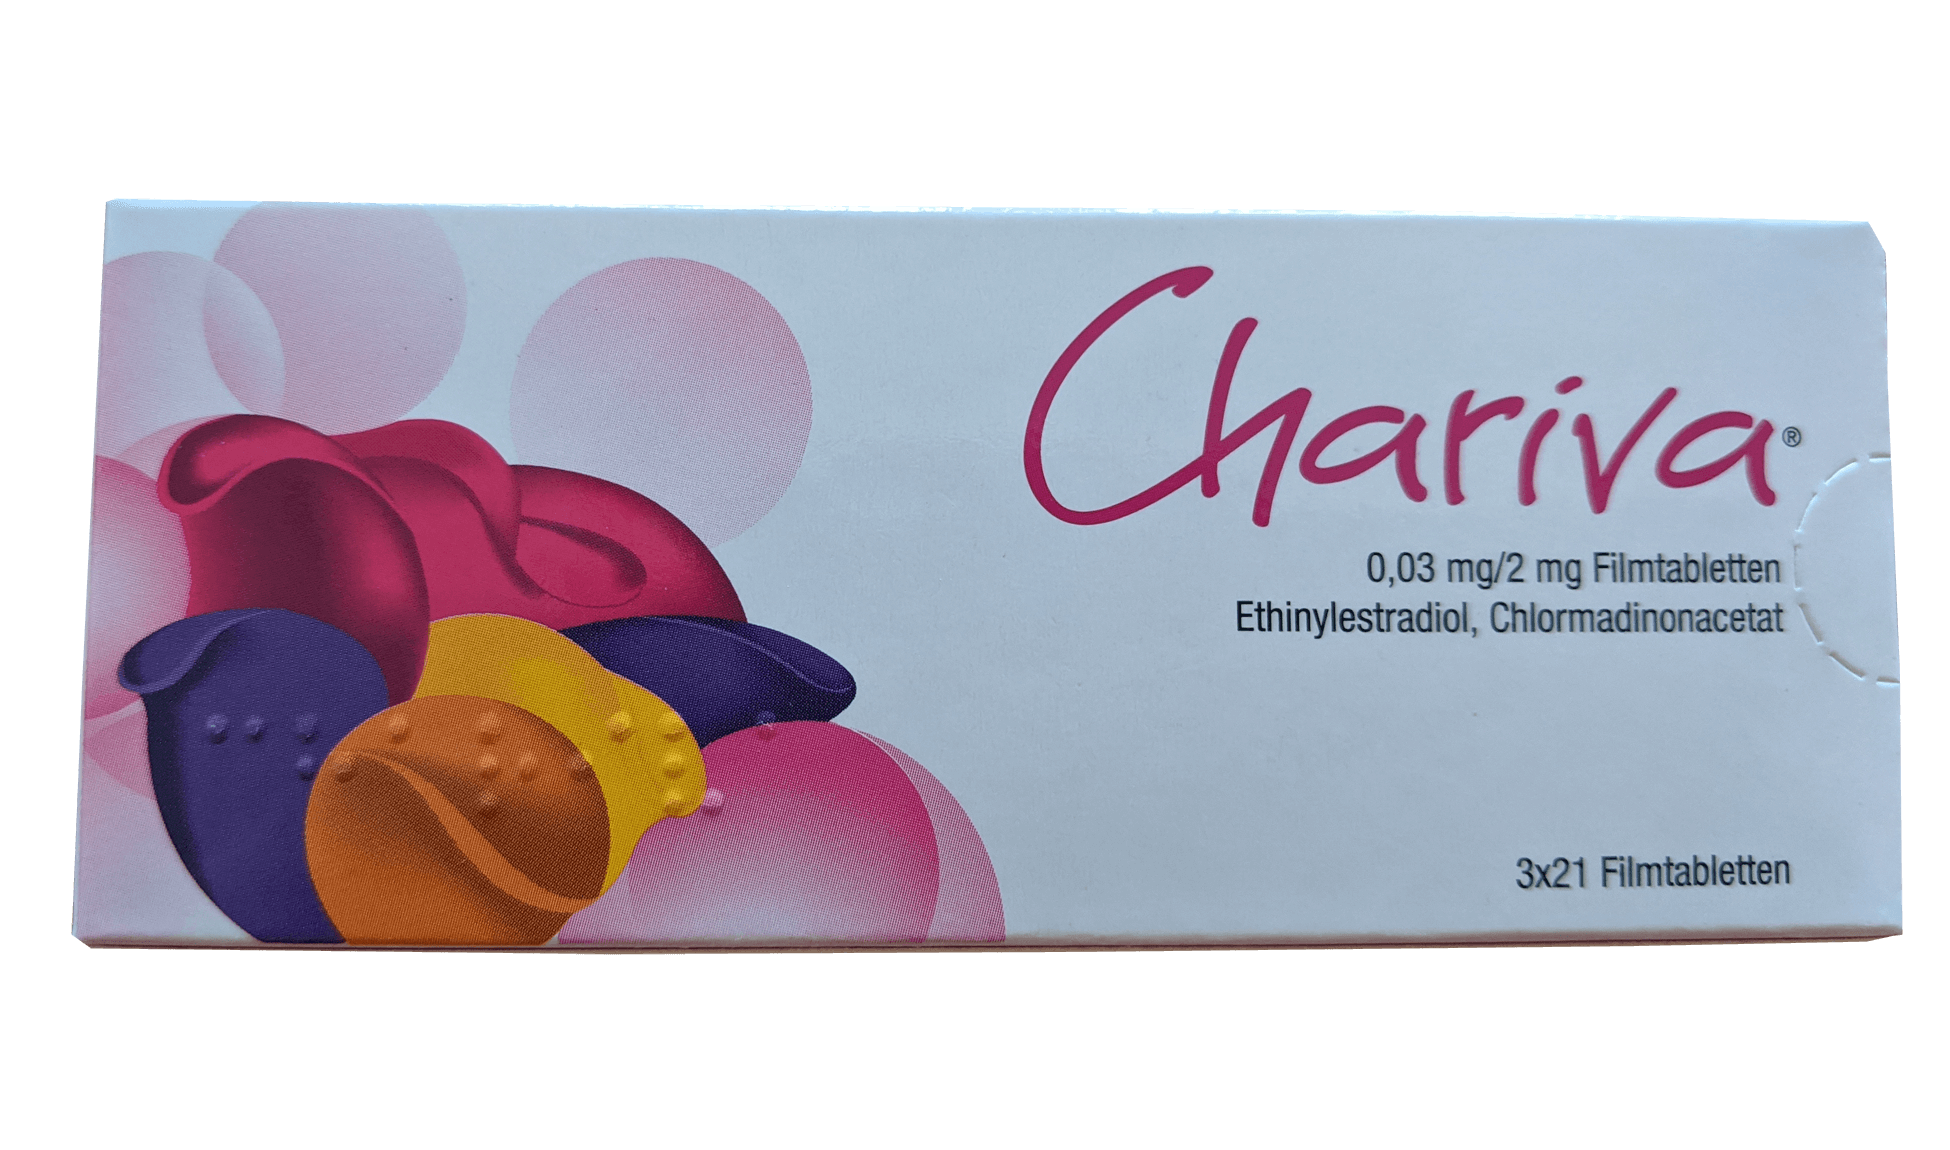 Erfahrungen chariva pille Erfahrung Pille